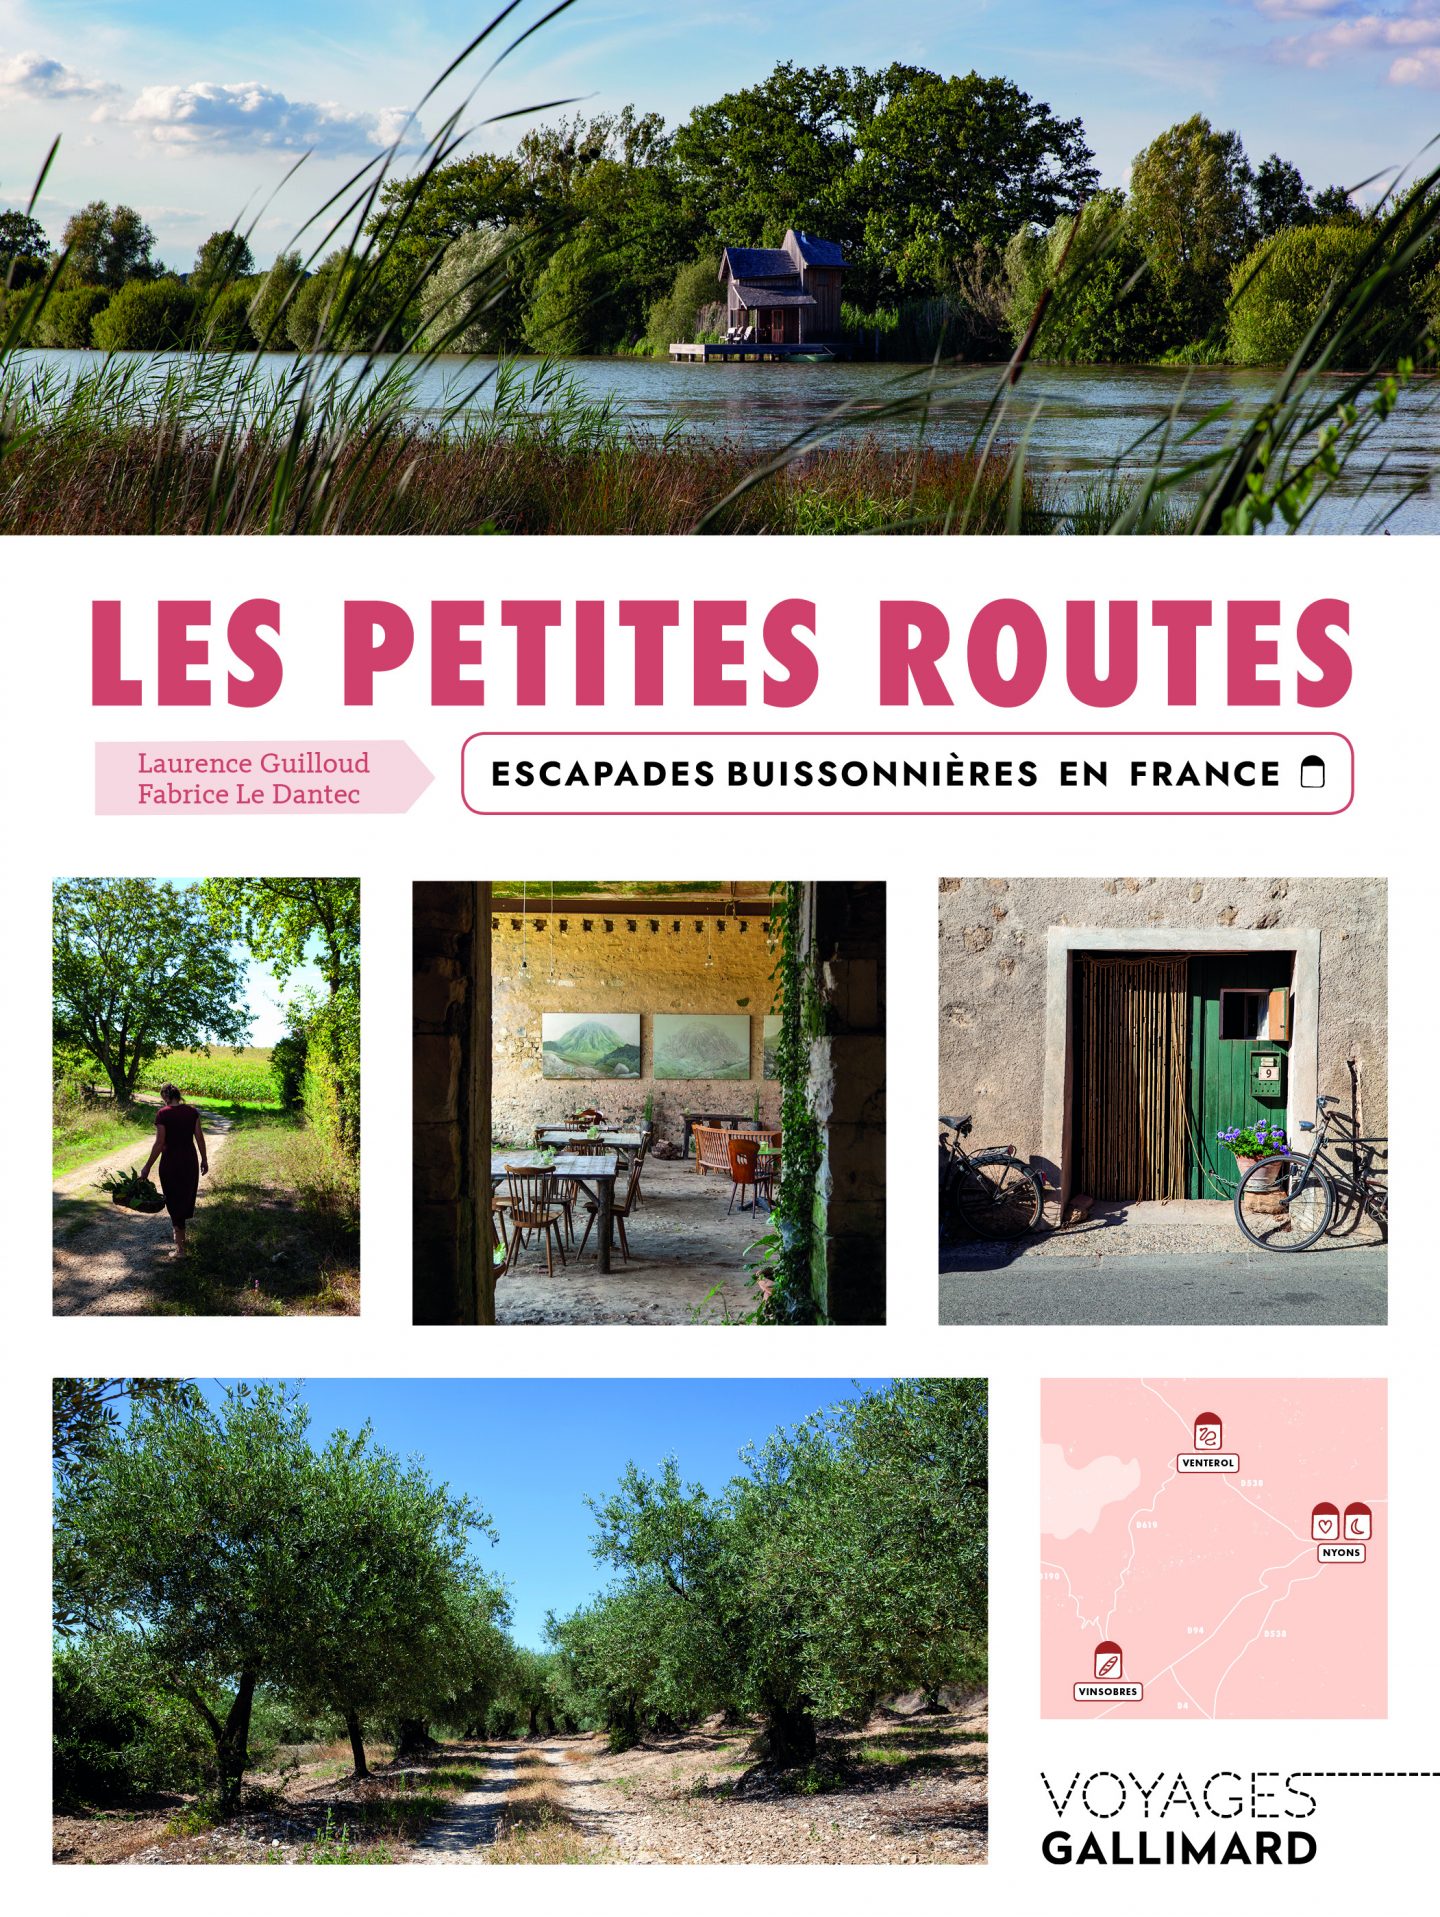 Les petites routes éditions Gallimard